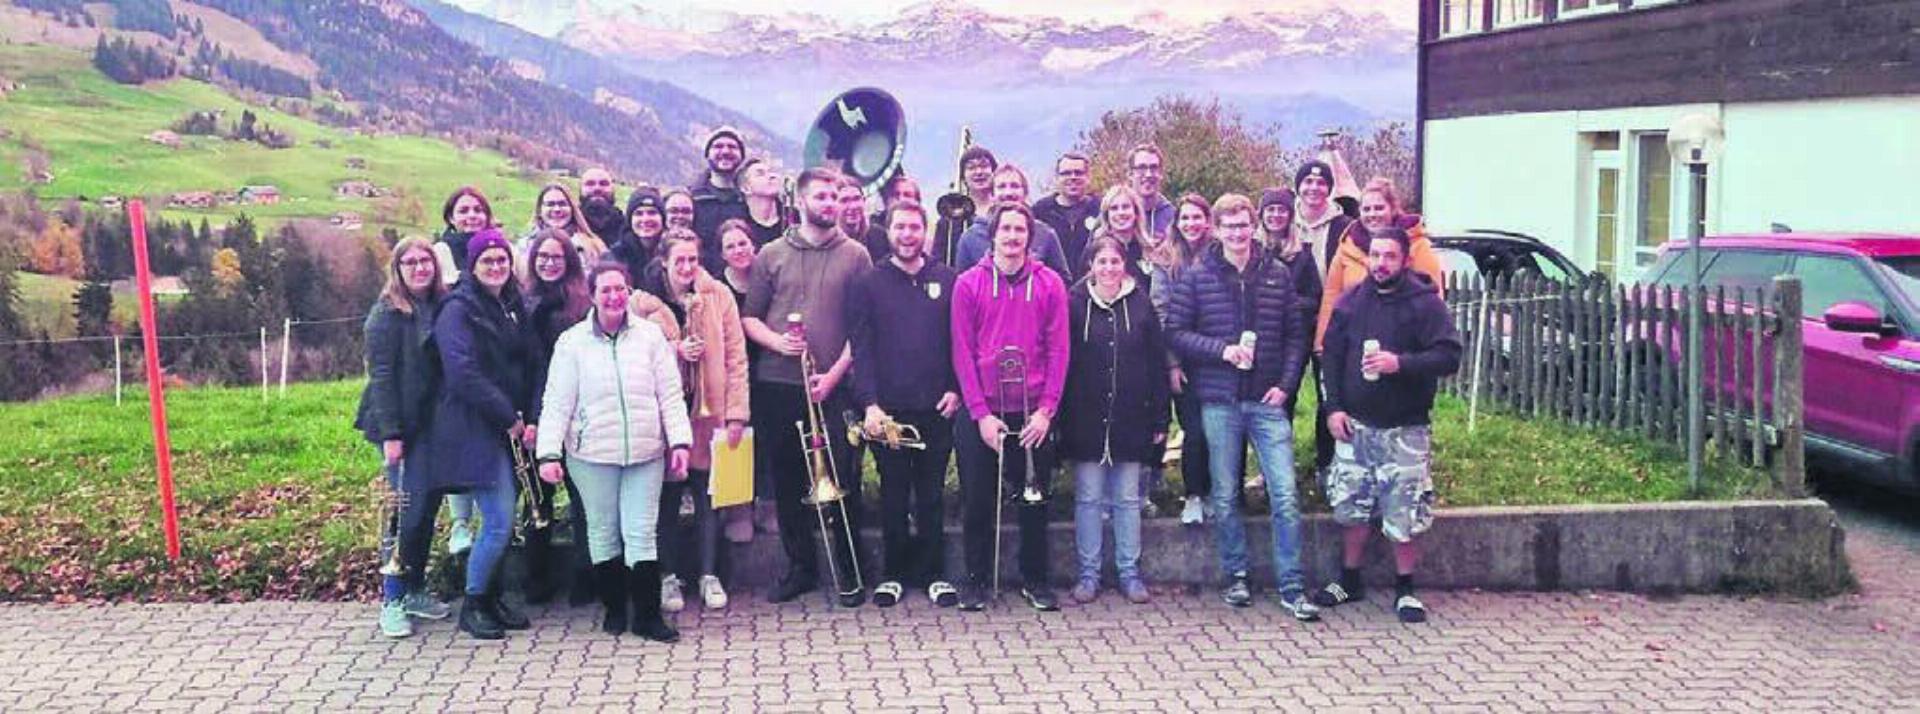 Zwei Tage lang bereiteten sich die Villmerger im Berner Oberland auf die kommenden Auftritte vor. Bild: zg